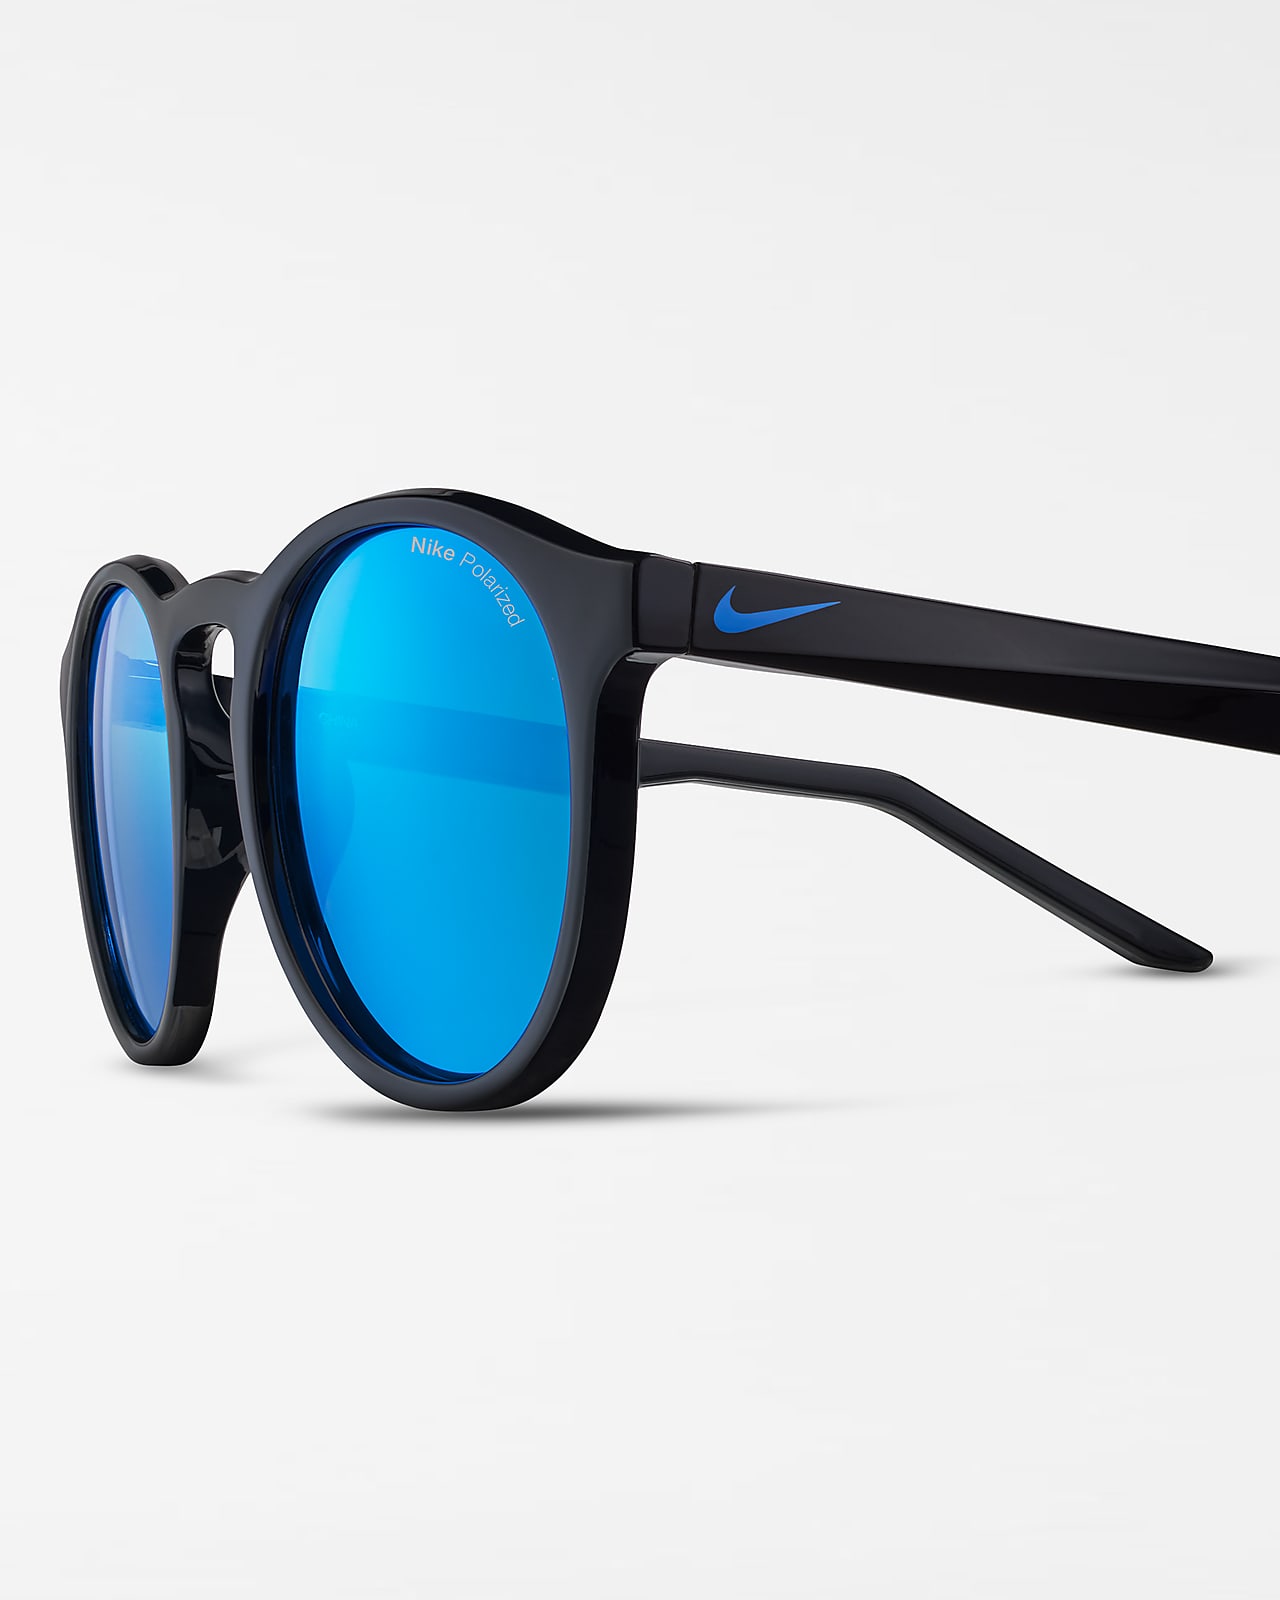 Nike Swerve Polarized Sunglasses.